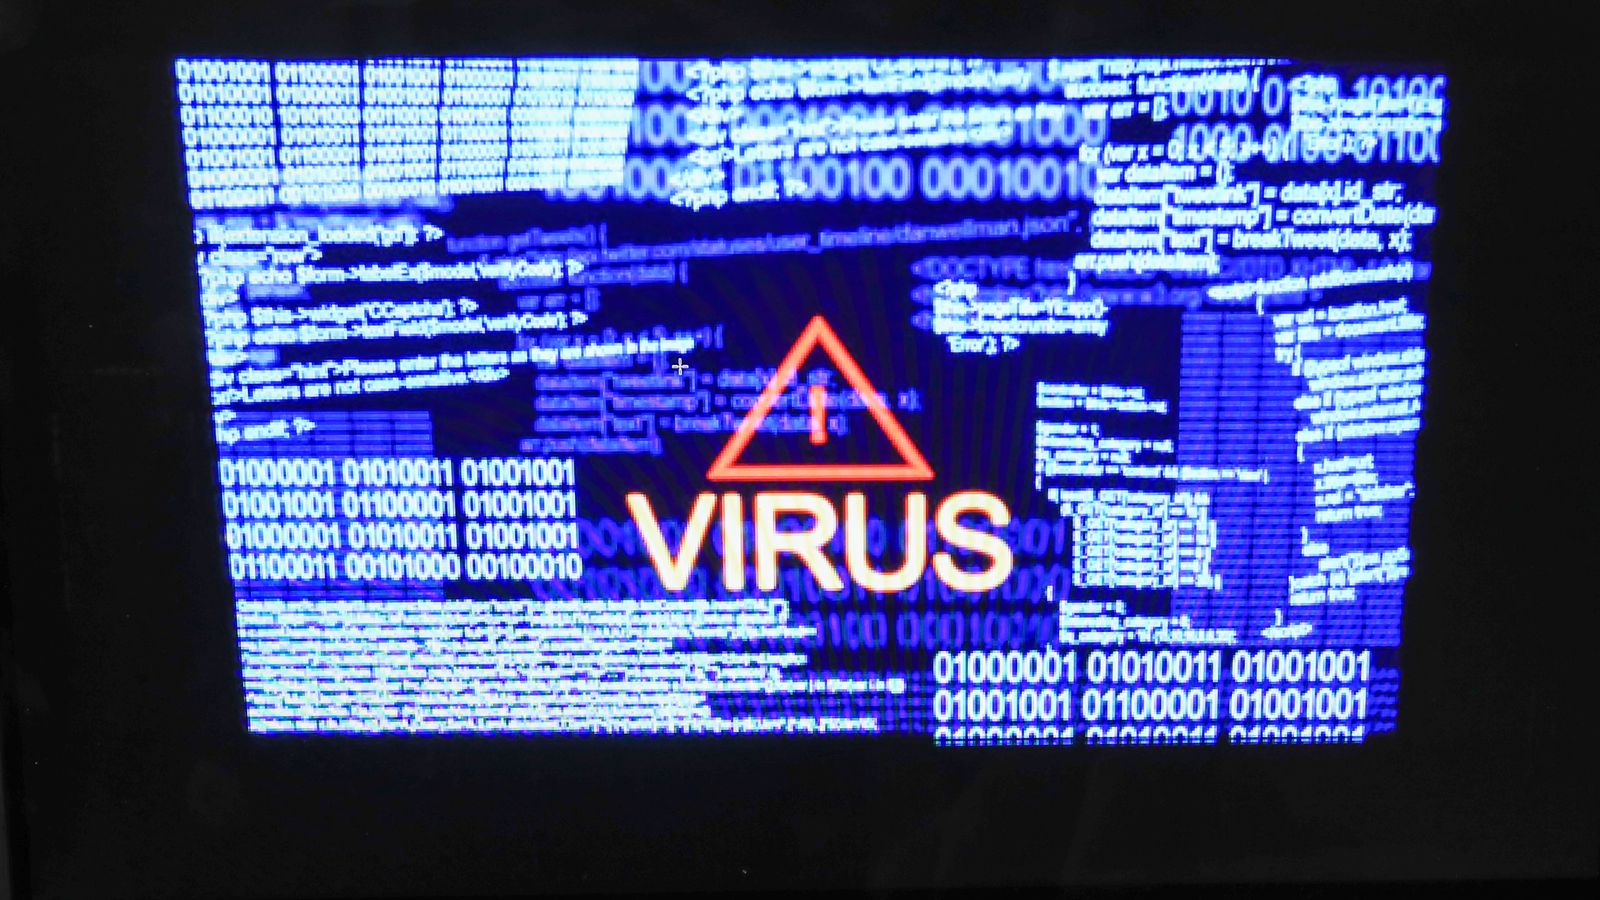 Обединеното кралство може да бъде спряно „всеки момент“ от кибератака, предупреждава докладът